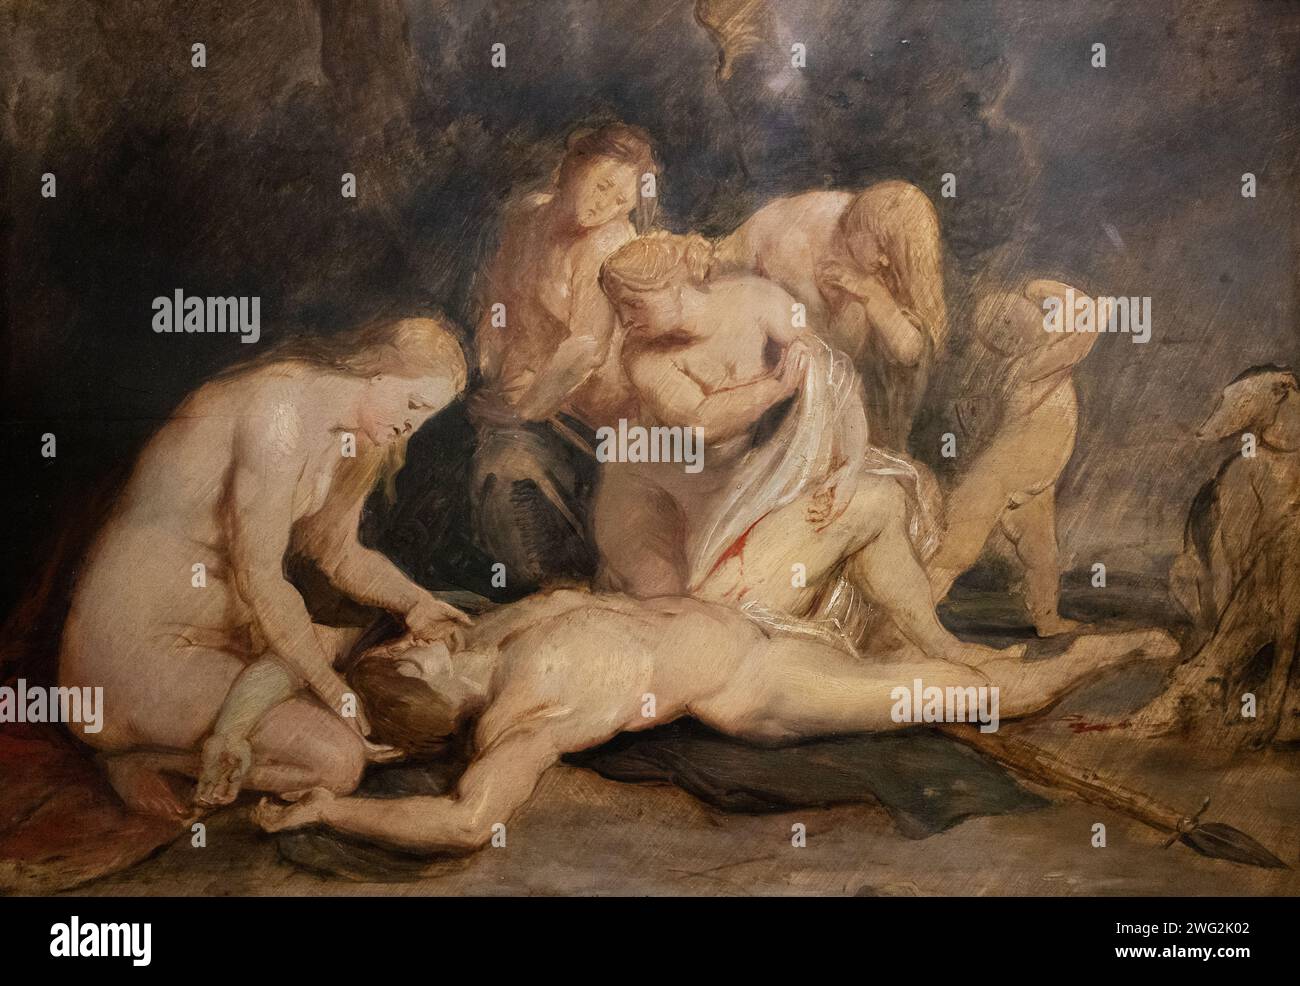 Peinture de Peter Paul Rubens, 'venus en deuil Adonis', 1613 ; huile sur panneau, Vénus berçant Adonis, blessé en chassant. mythologie du xviie siècle. Banque D'Images